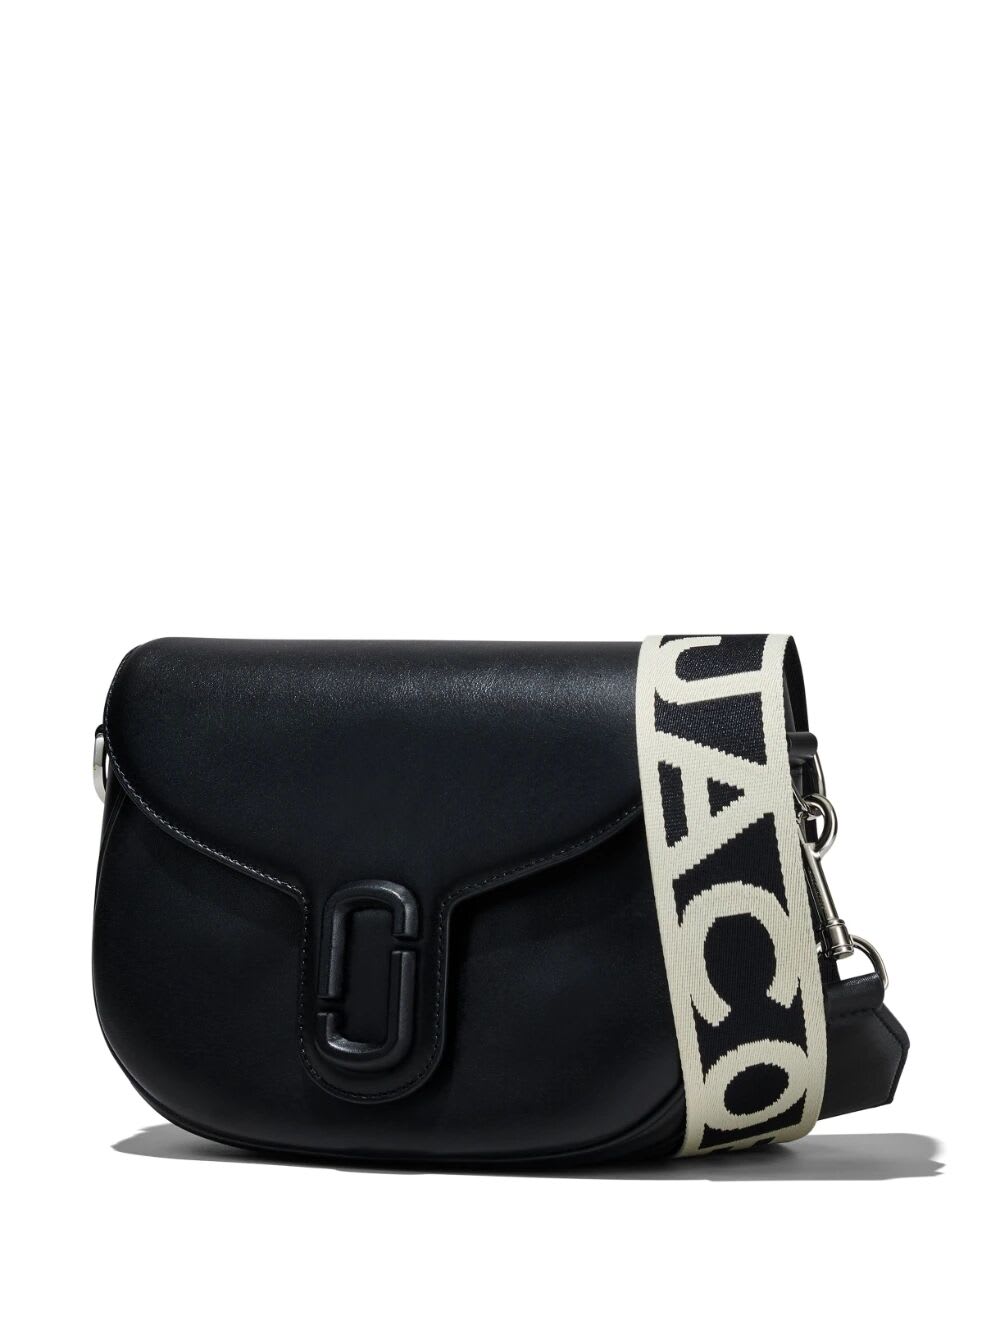 Shop Marc Jacobs The Large Saddle Bag In Black